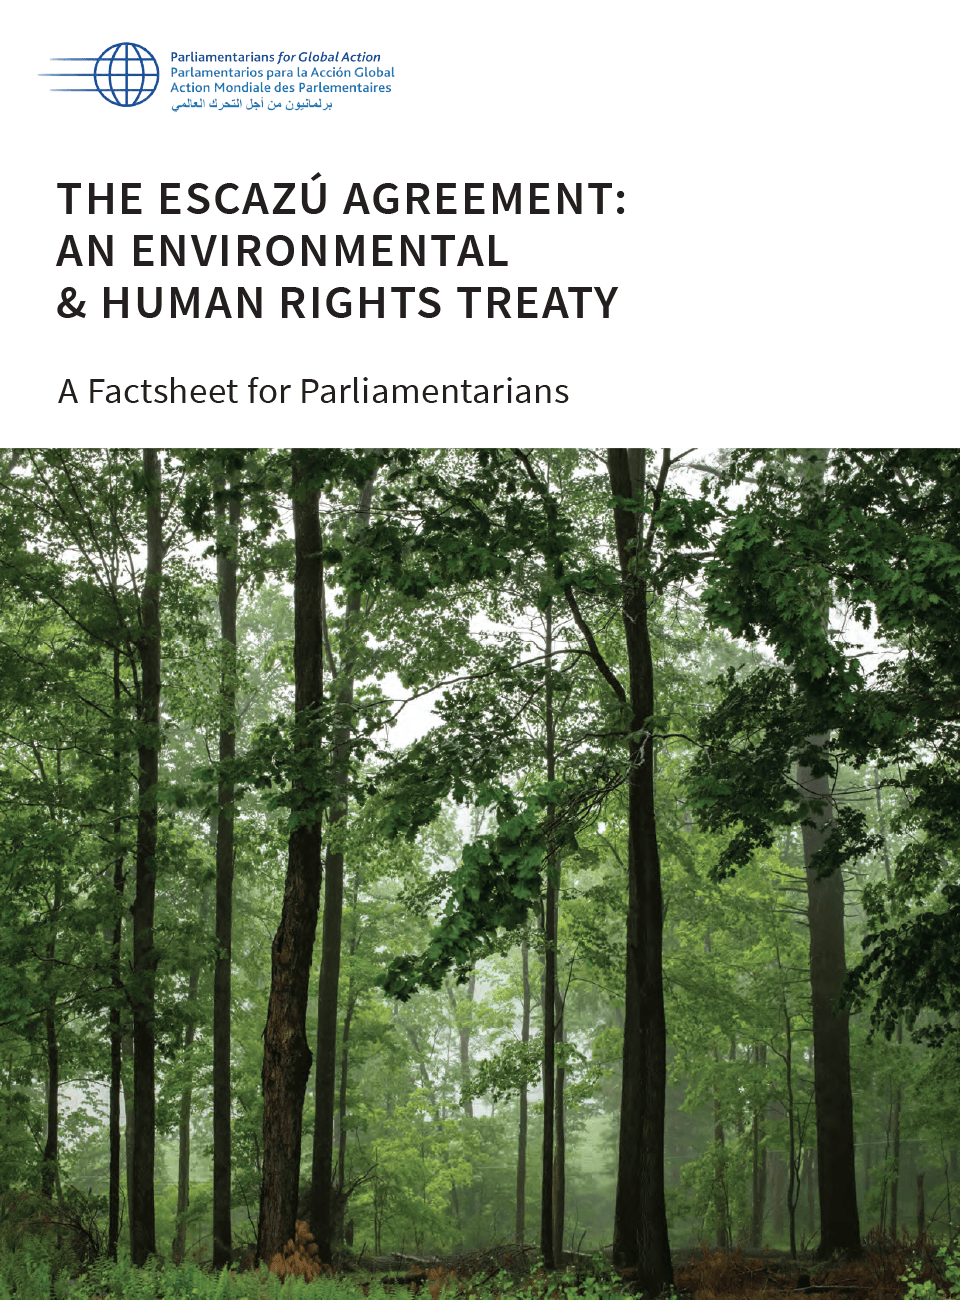 Fiche d’information pour les parlementaires : l’Accord d’Escazù, un traité sur l’environnement et les droits humains